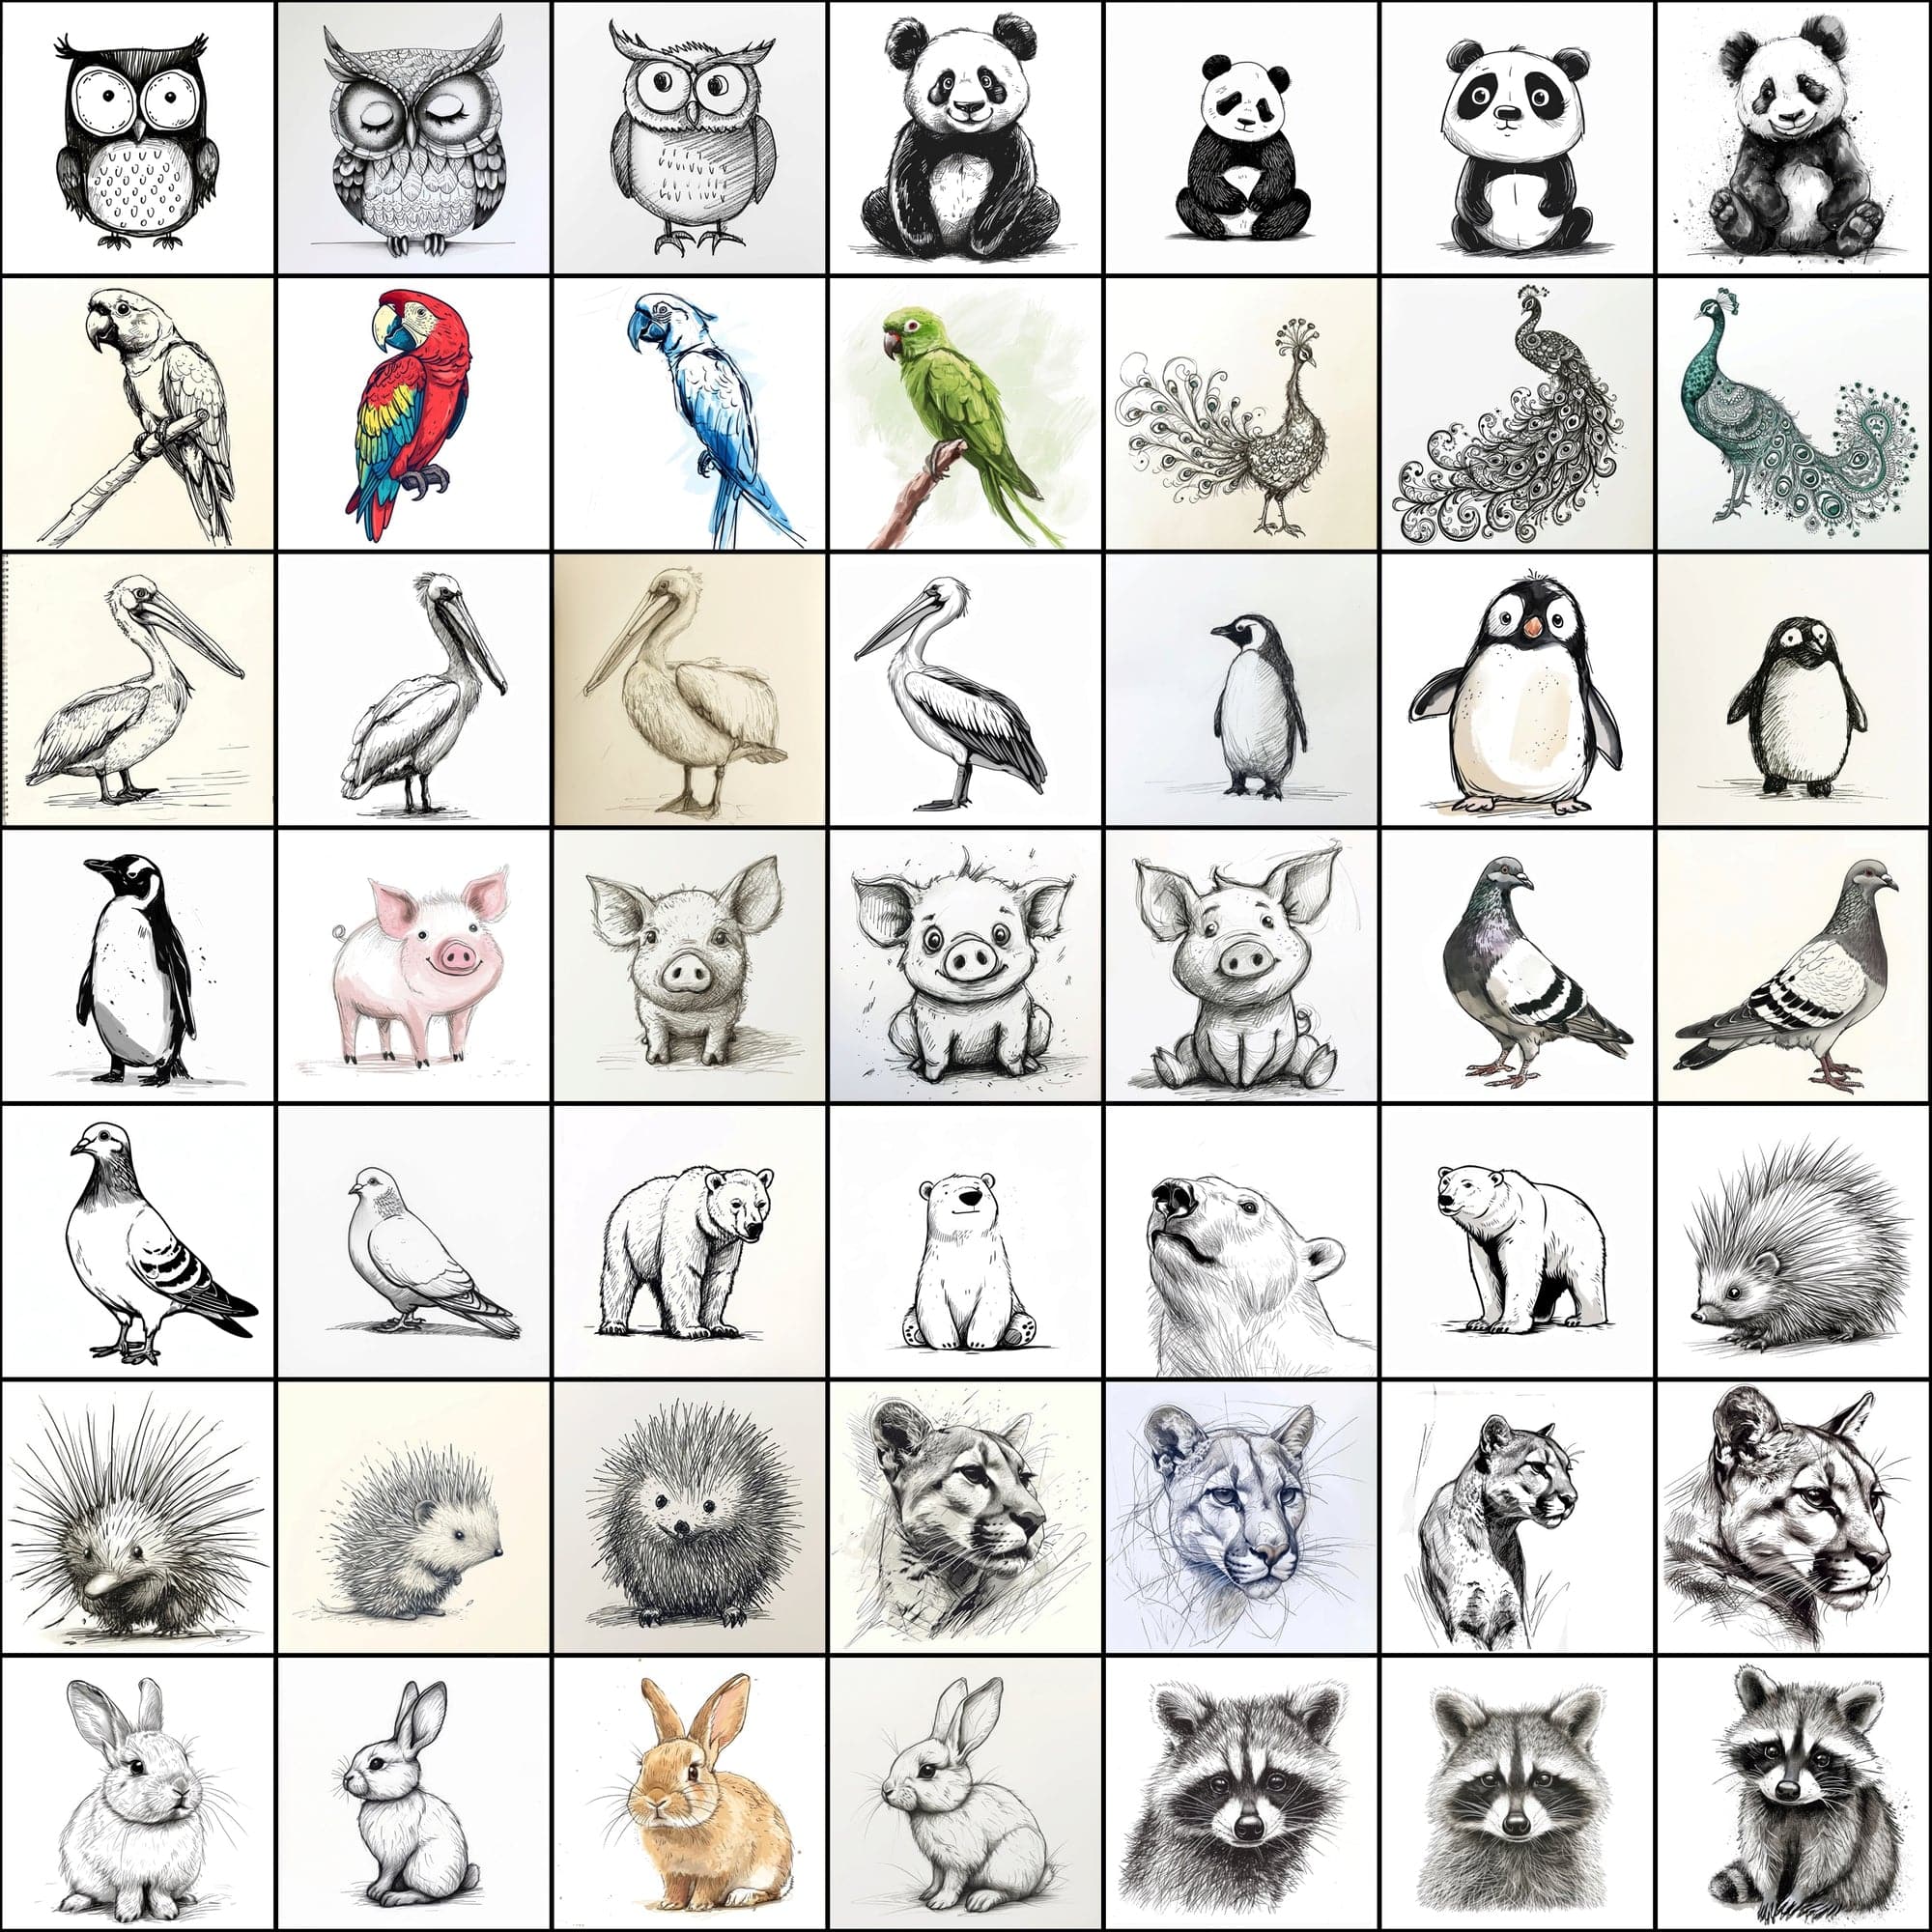 500 Doodle Animal Images, Black and White Digital Art Digital Download Sumobundle